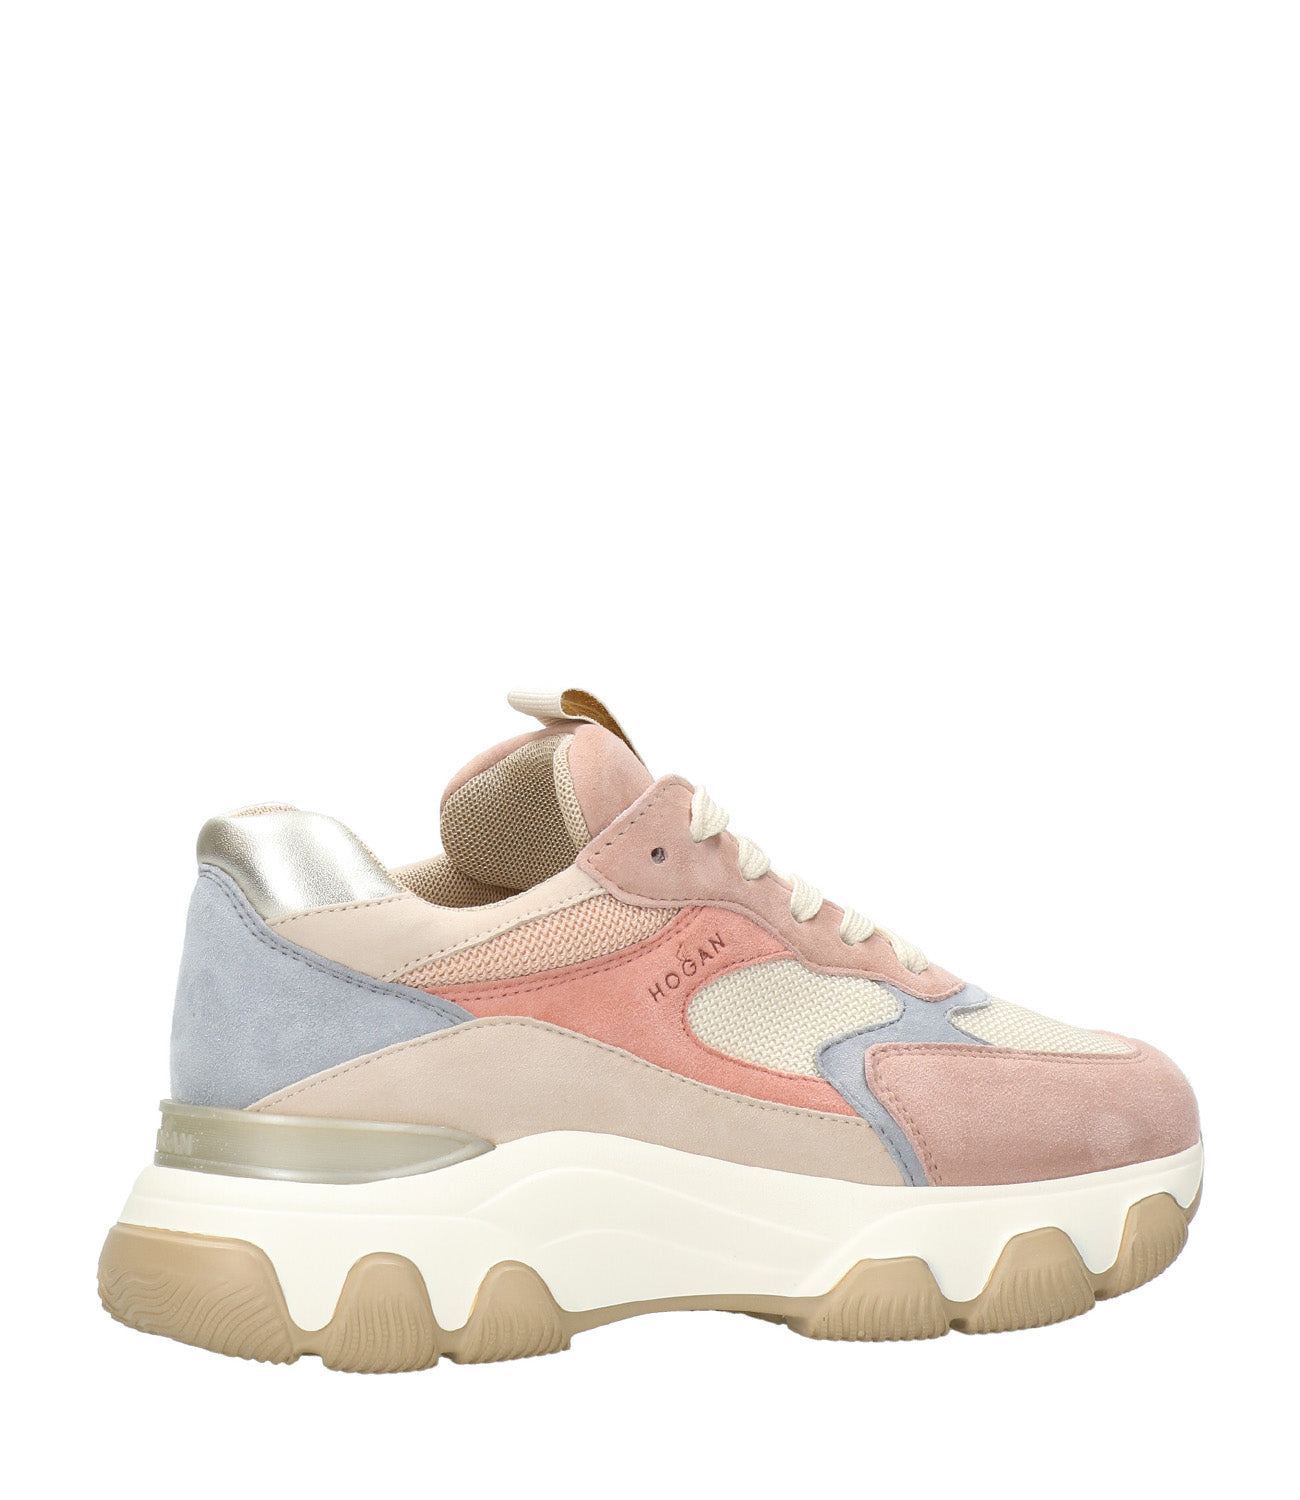 Hogan | Hyperactive Sneakers Beige and Pink